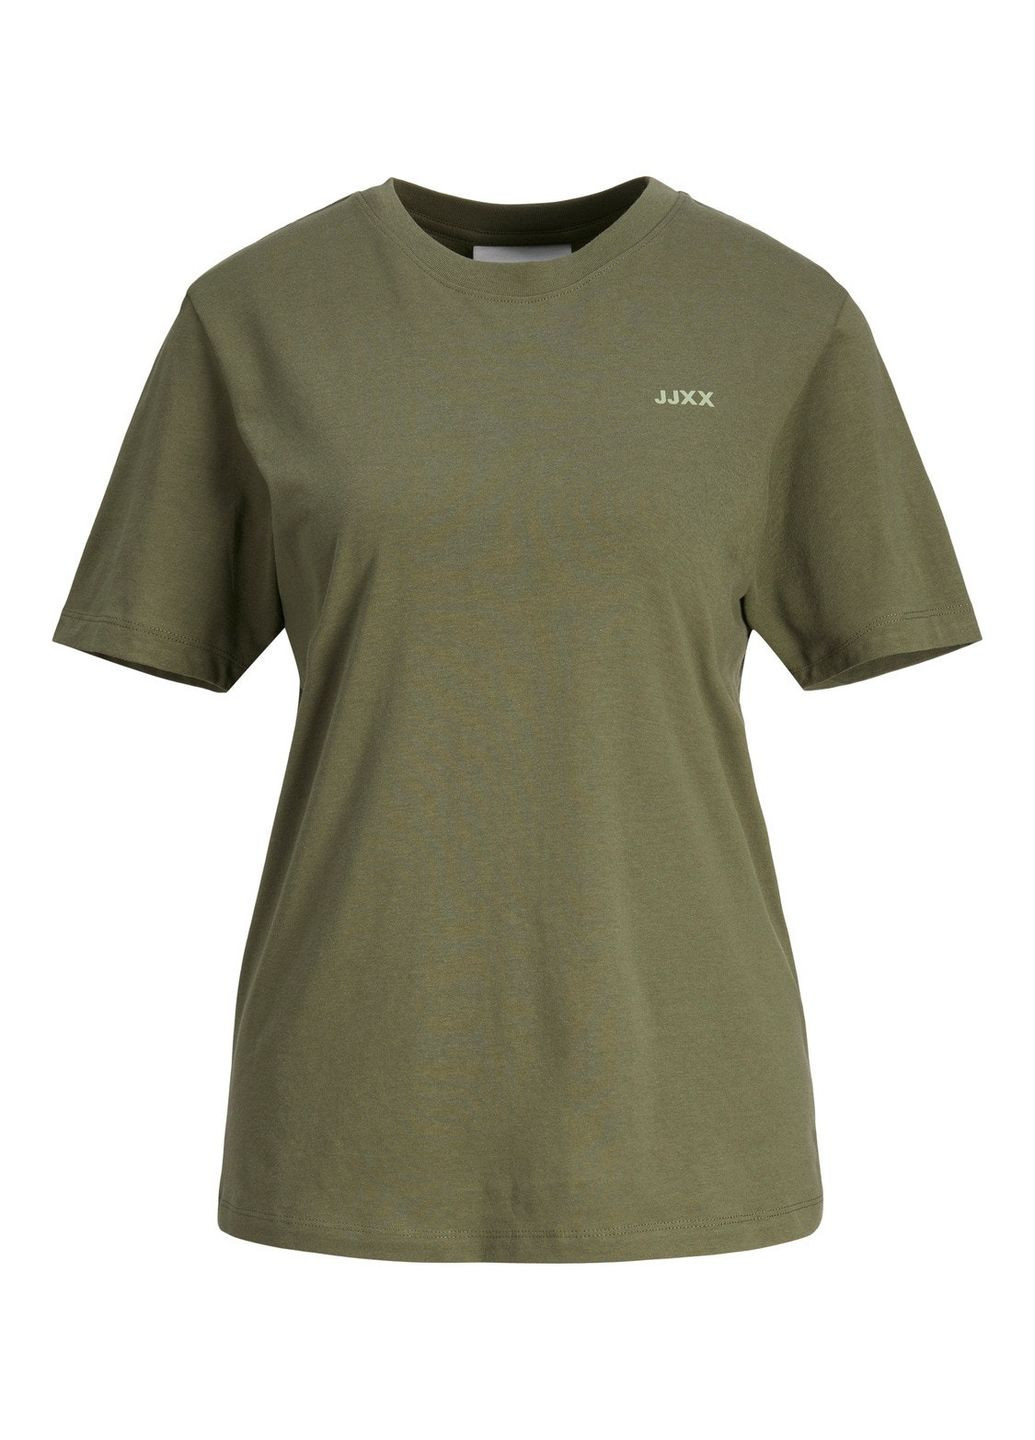 Хаки (оливковая) футболка JJXX